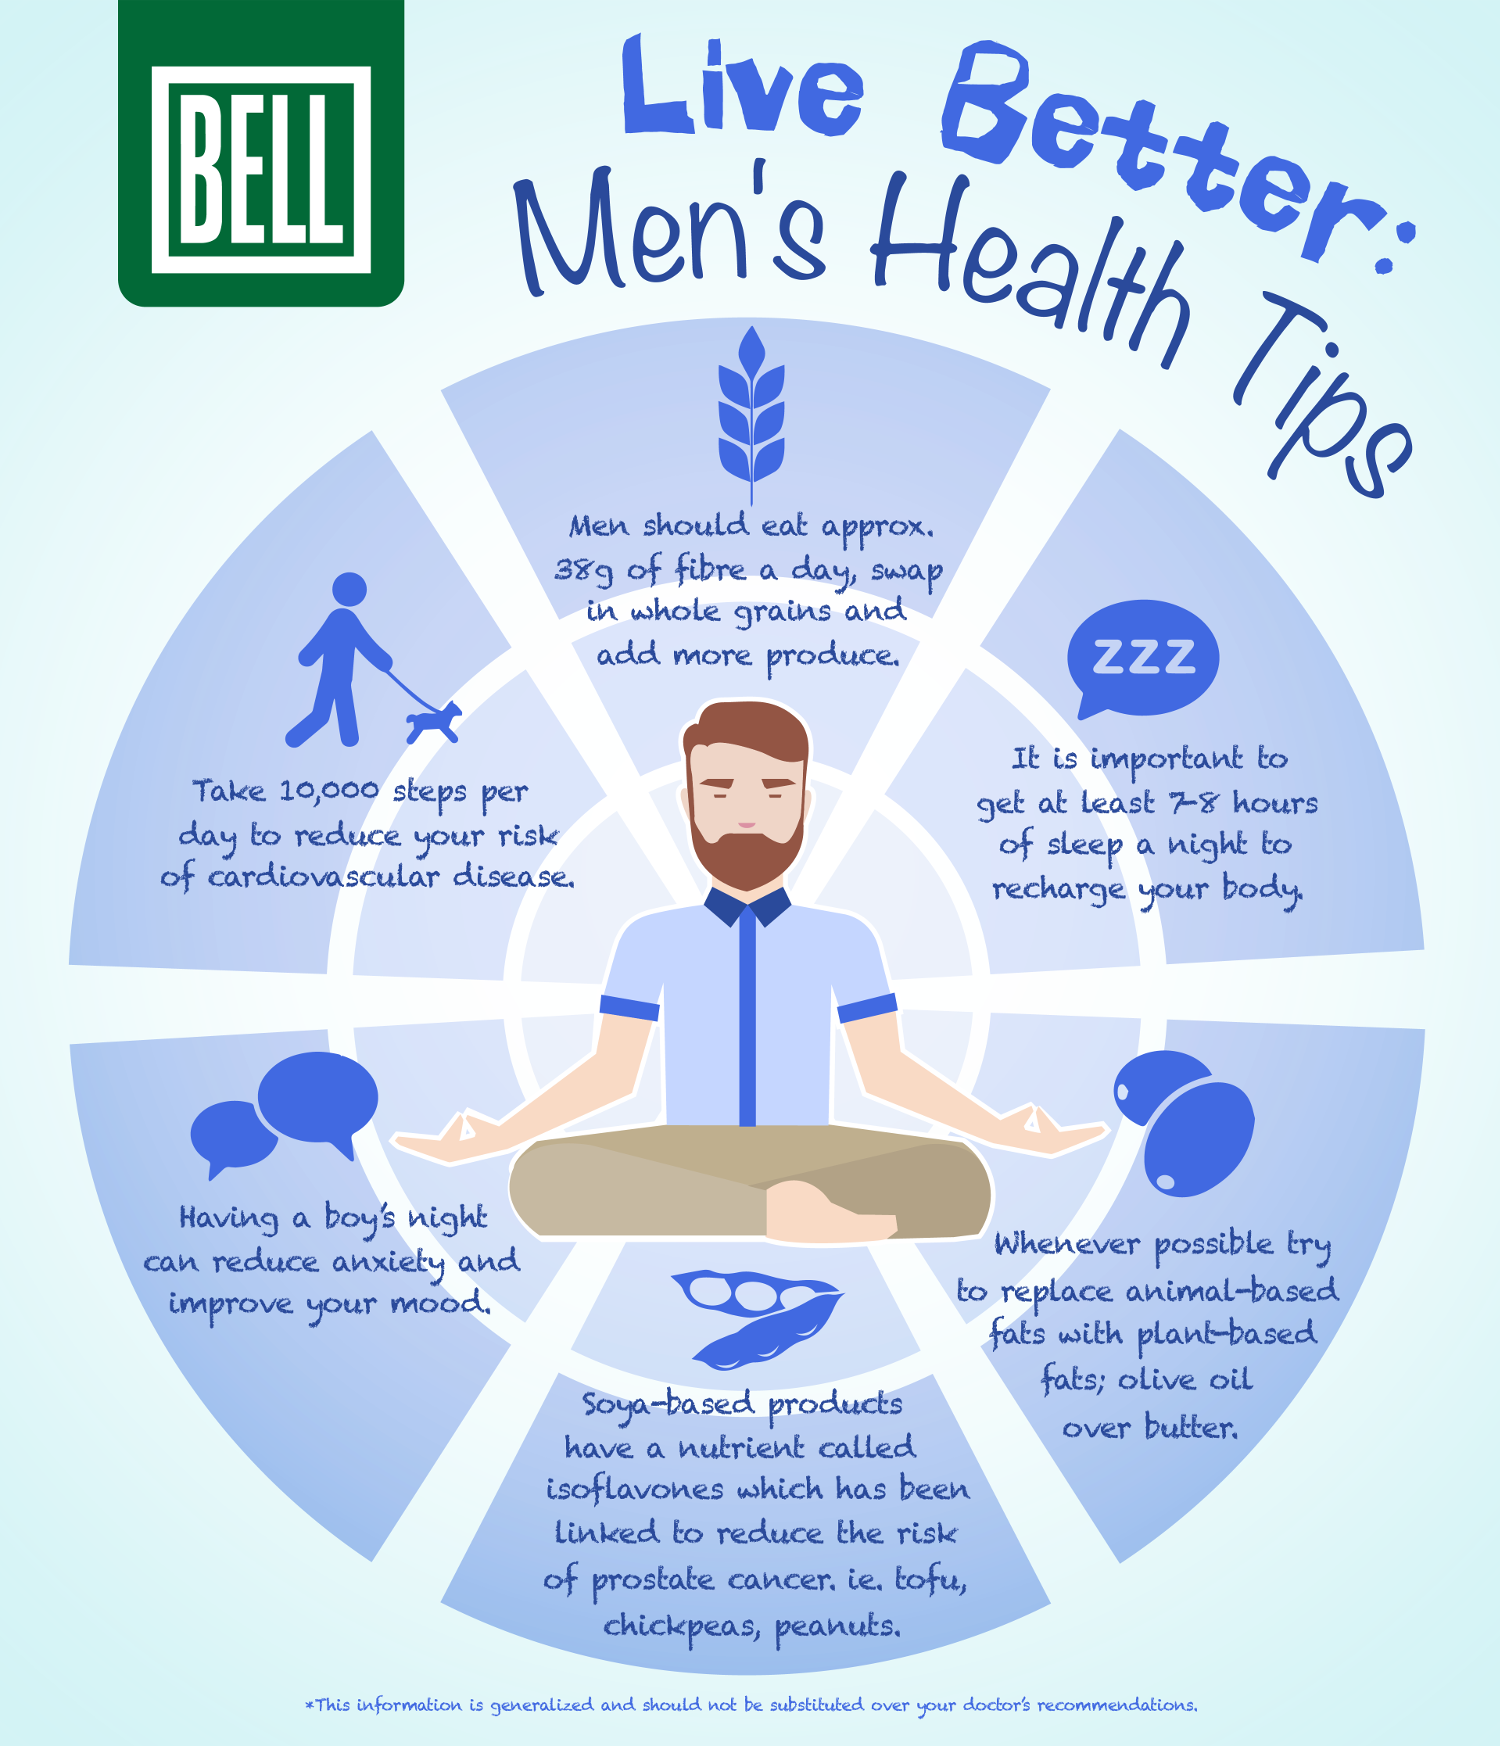 Live Better Men’s Health Tips [Infographic] Bell